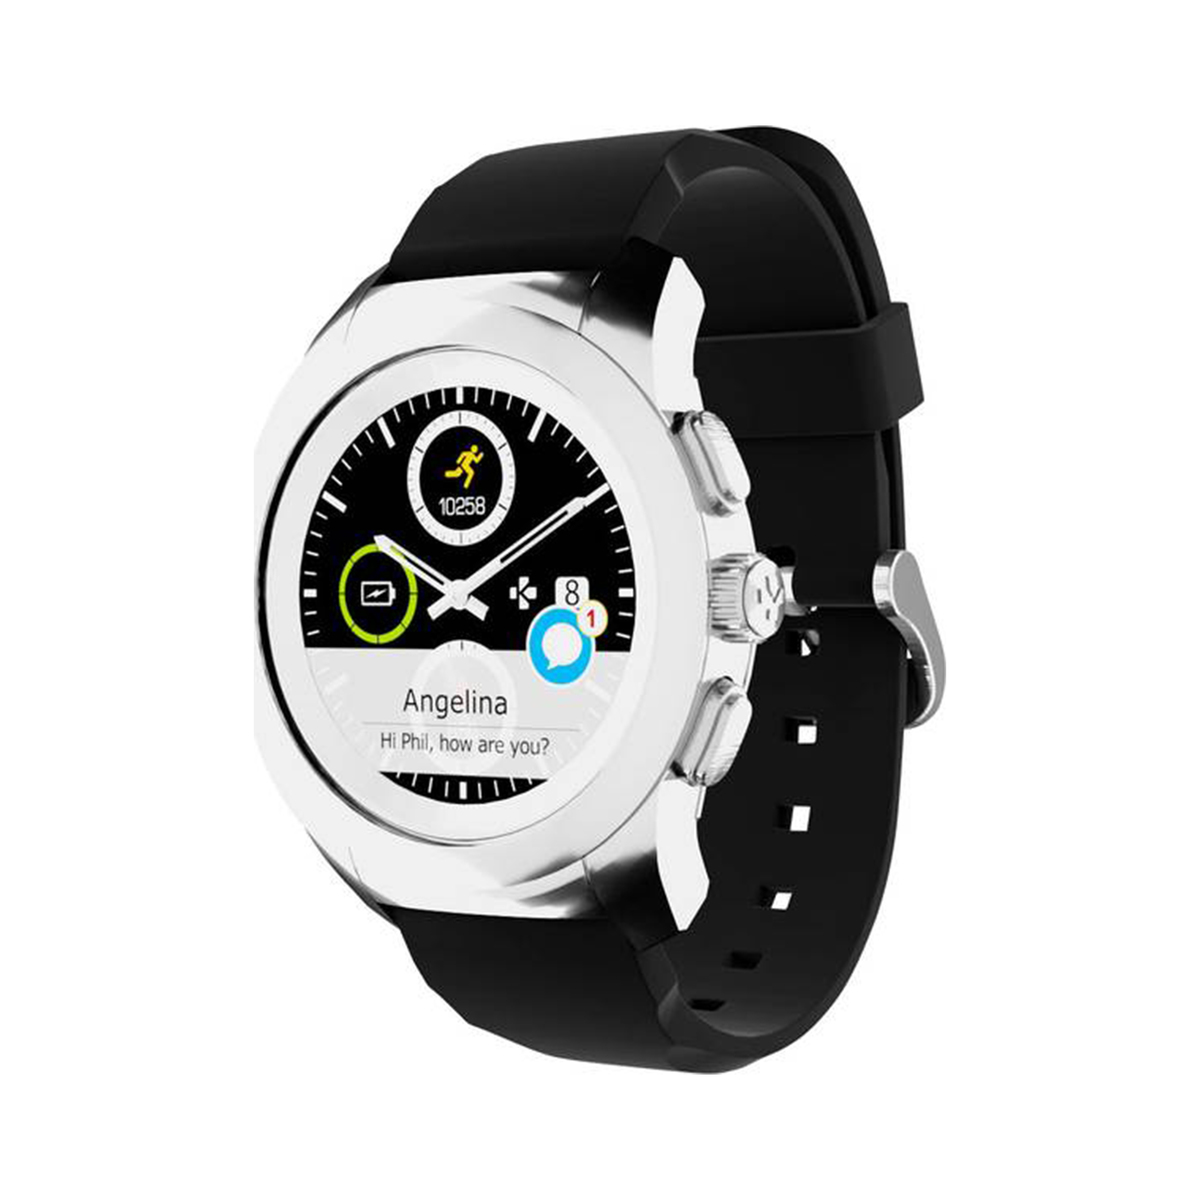 Mykronoz Smart Watch ZeTime 44mm Black